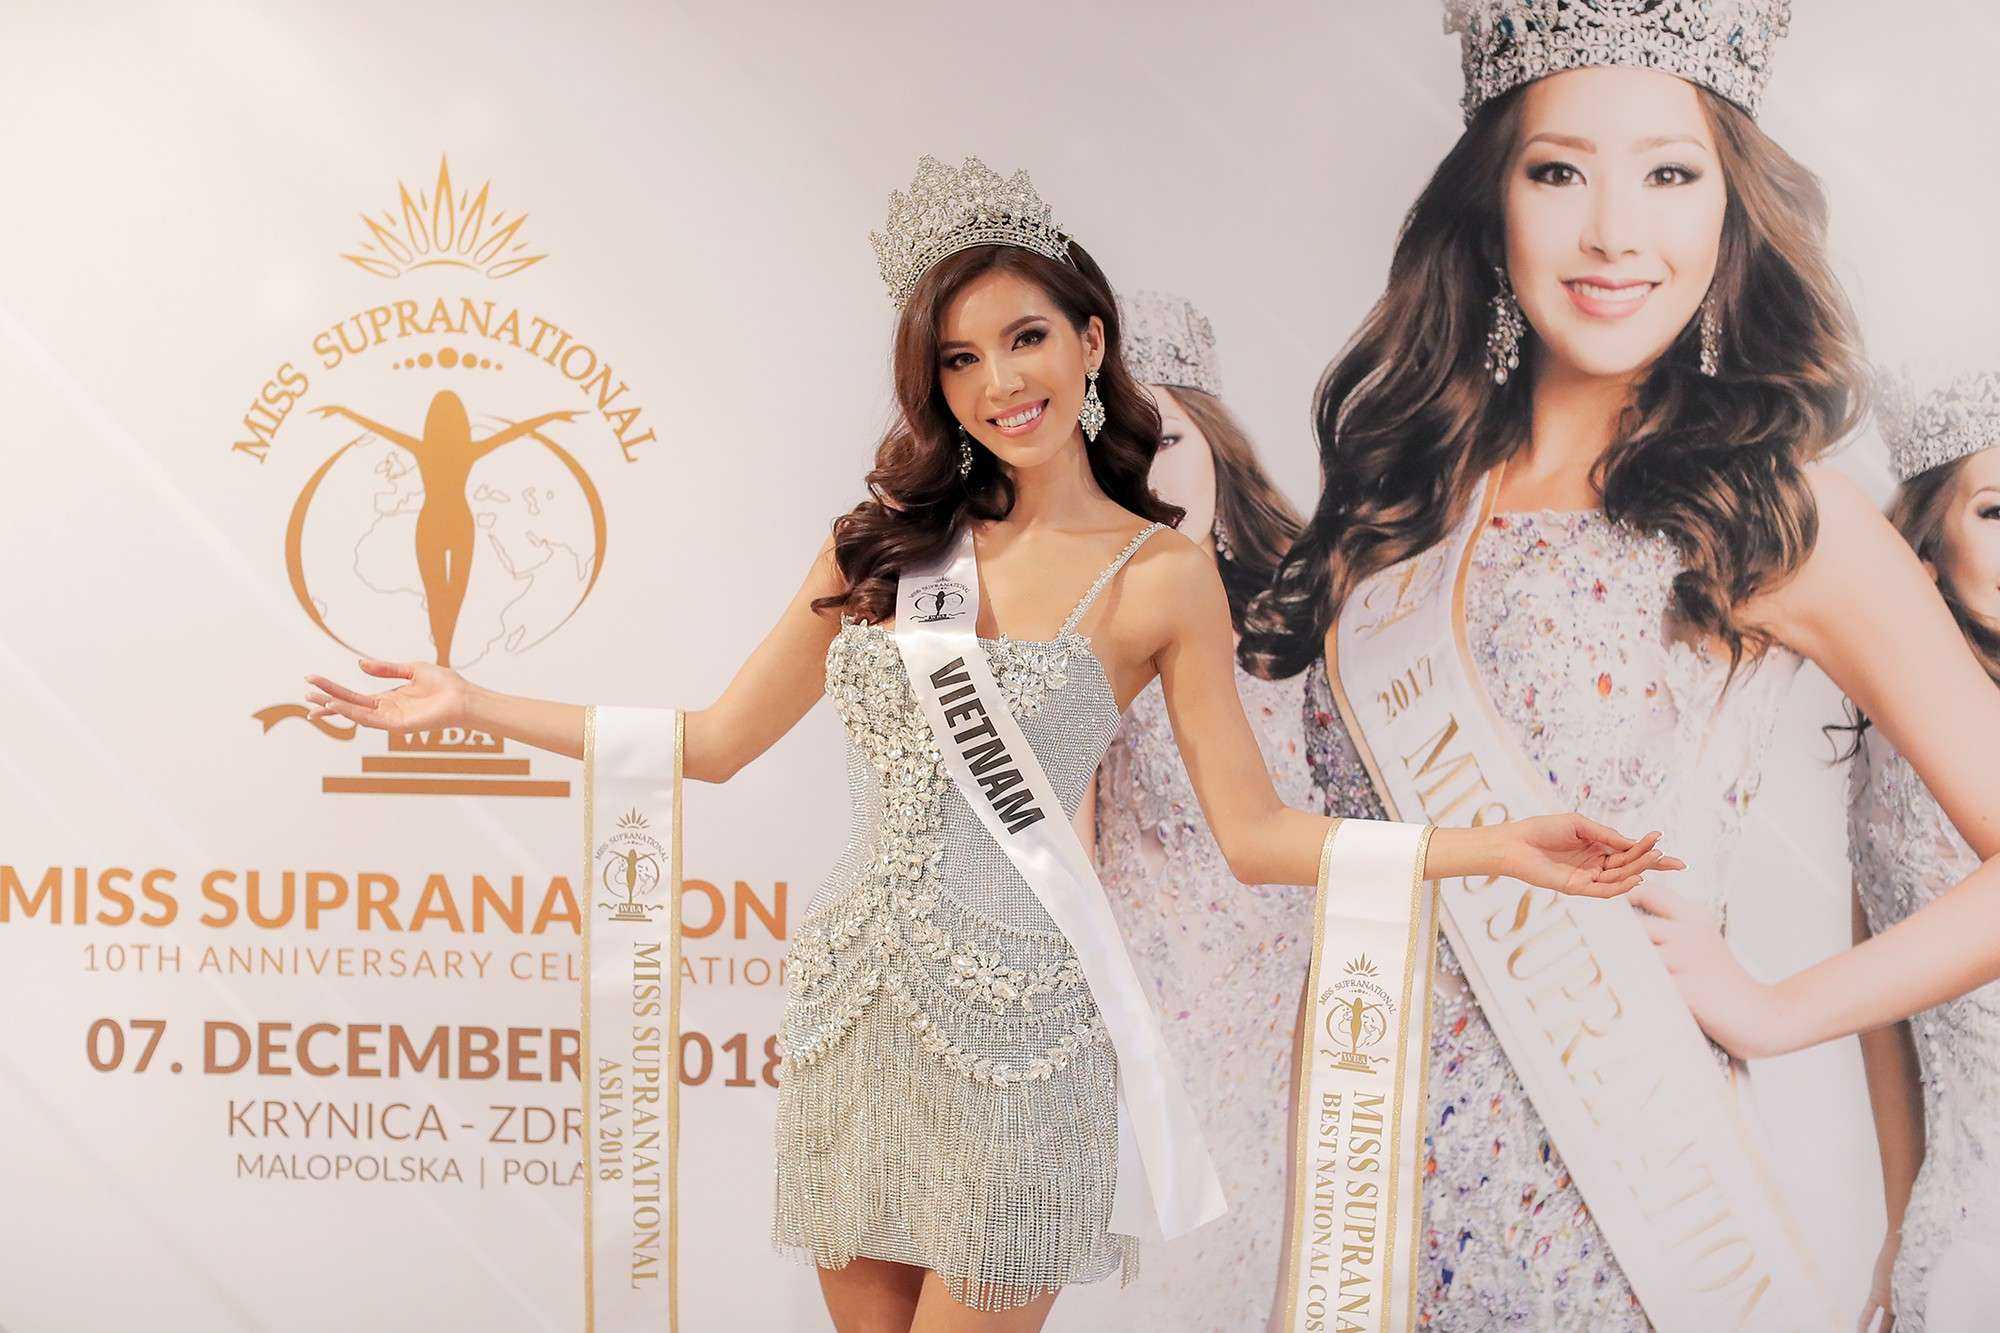 Minh Tú đoạt giải Hoa hậu siêu quốc gia châu Á 2018 - Ảnh 1.